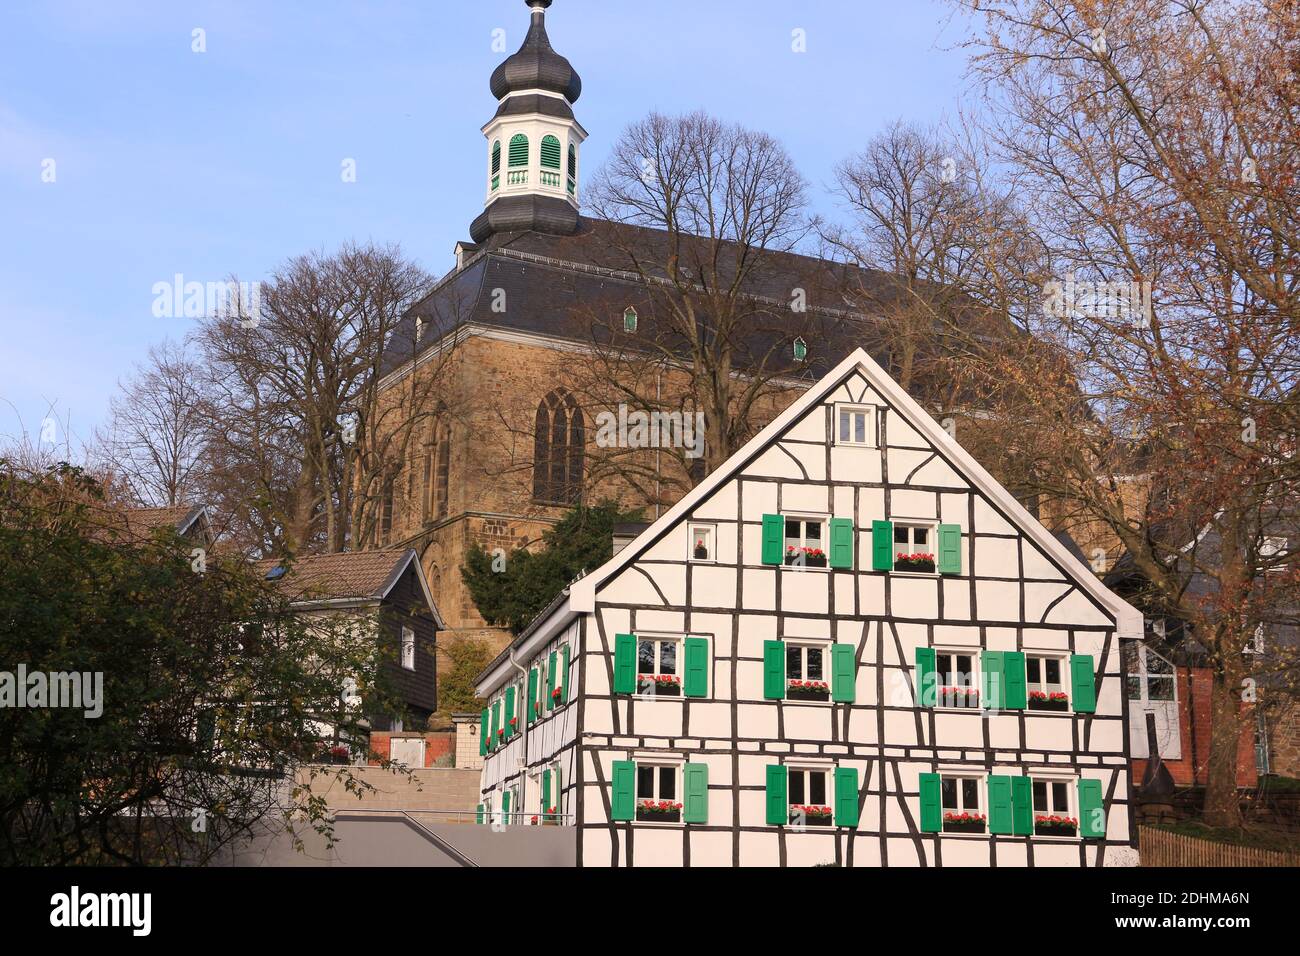 Impressionen aus der Historischen Altstadt von Gräfrath, einem ...